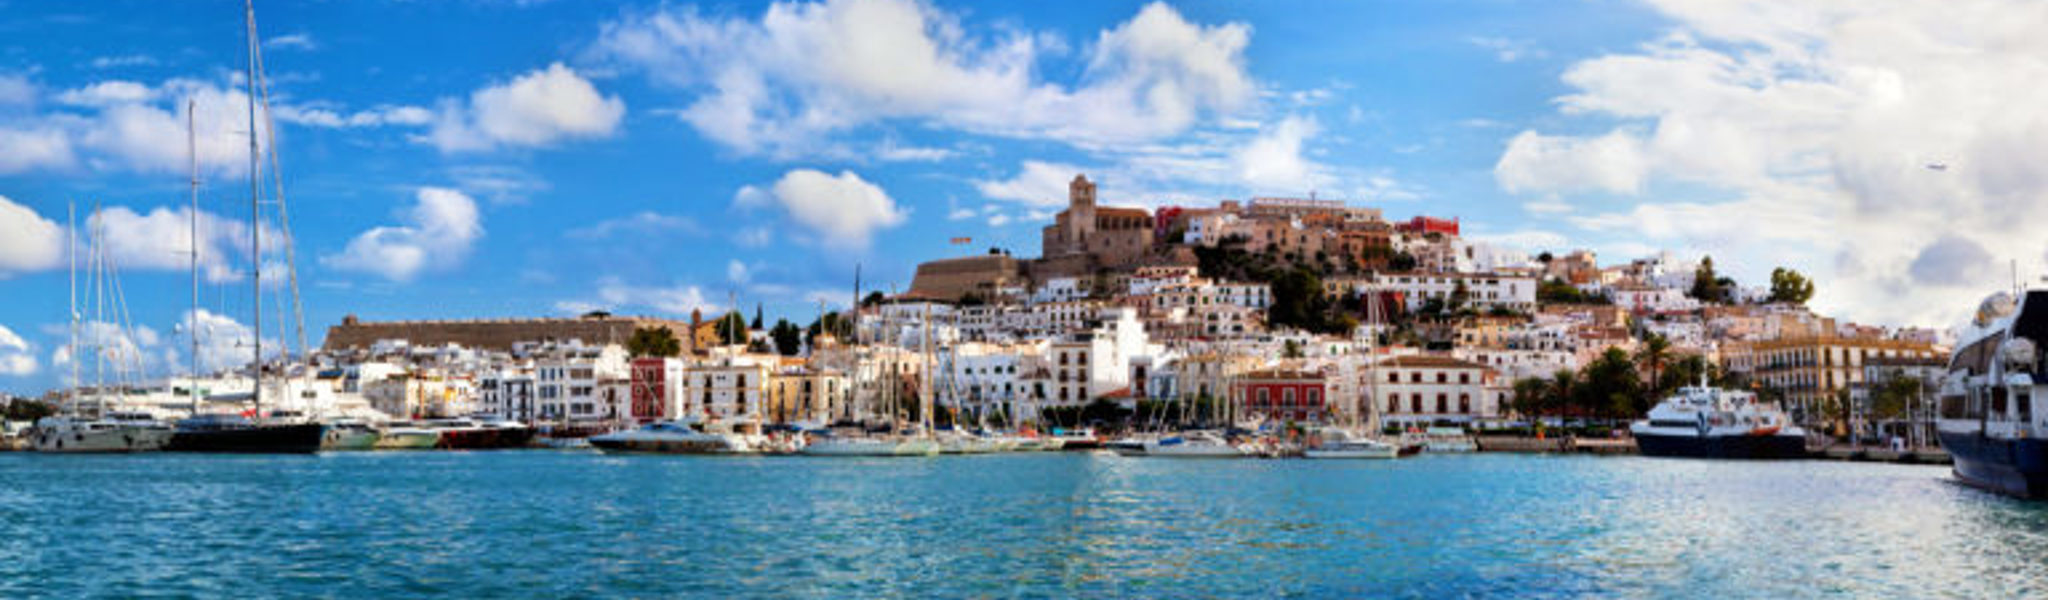 El casco antiguo de Ibiza: una breve historia